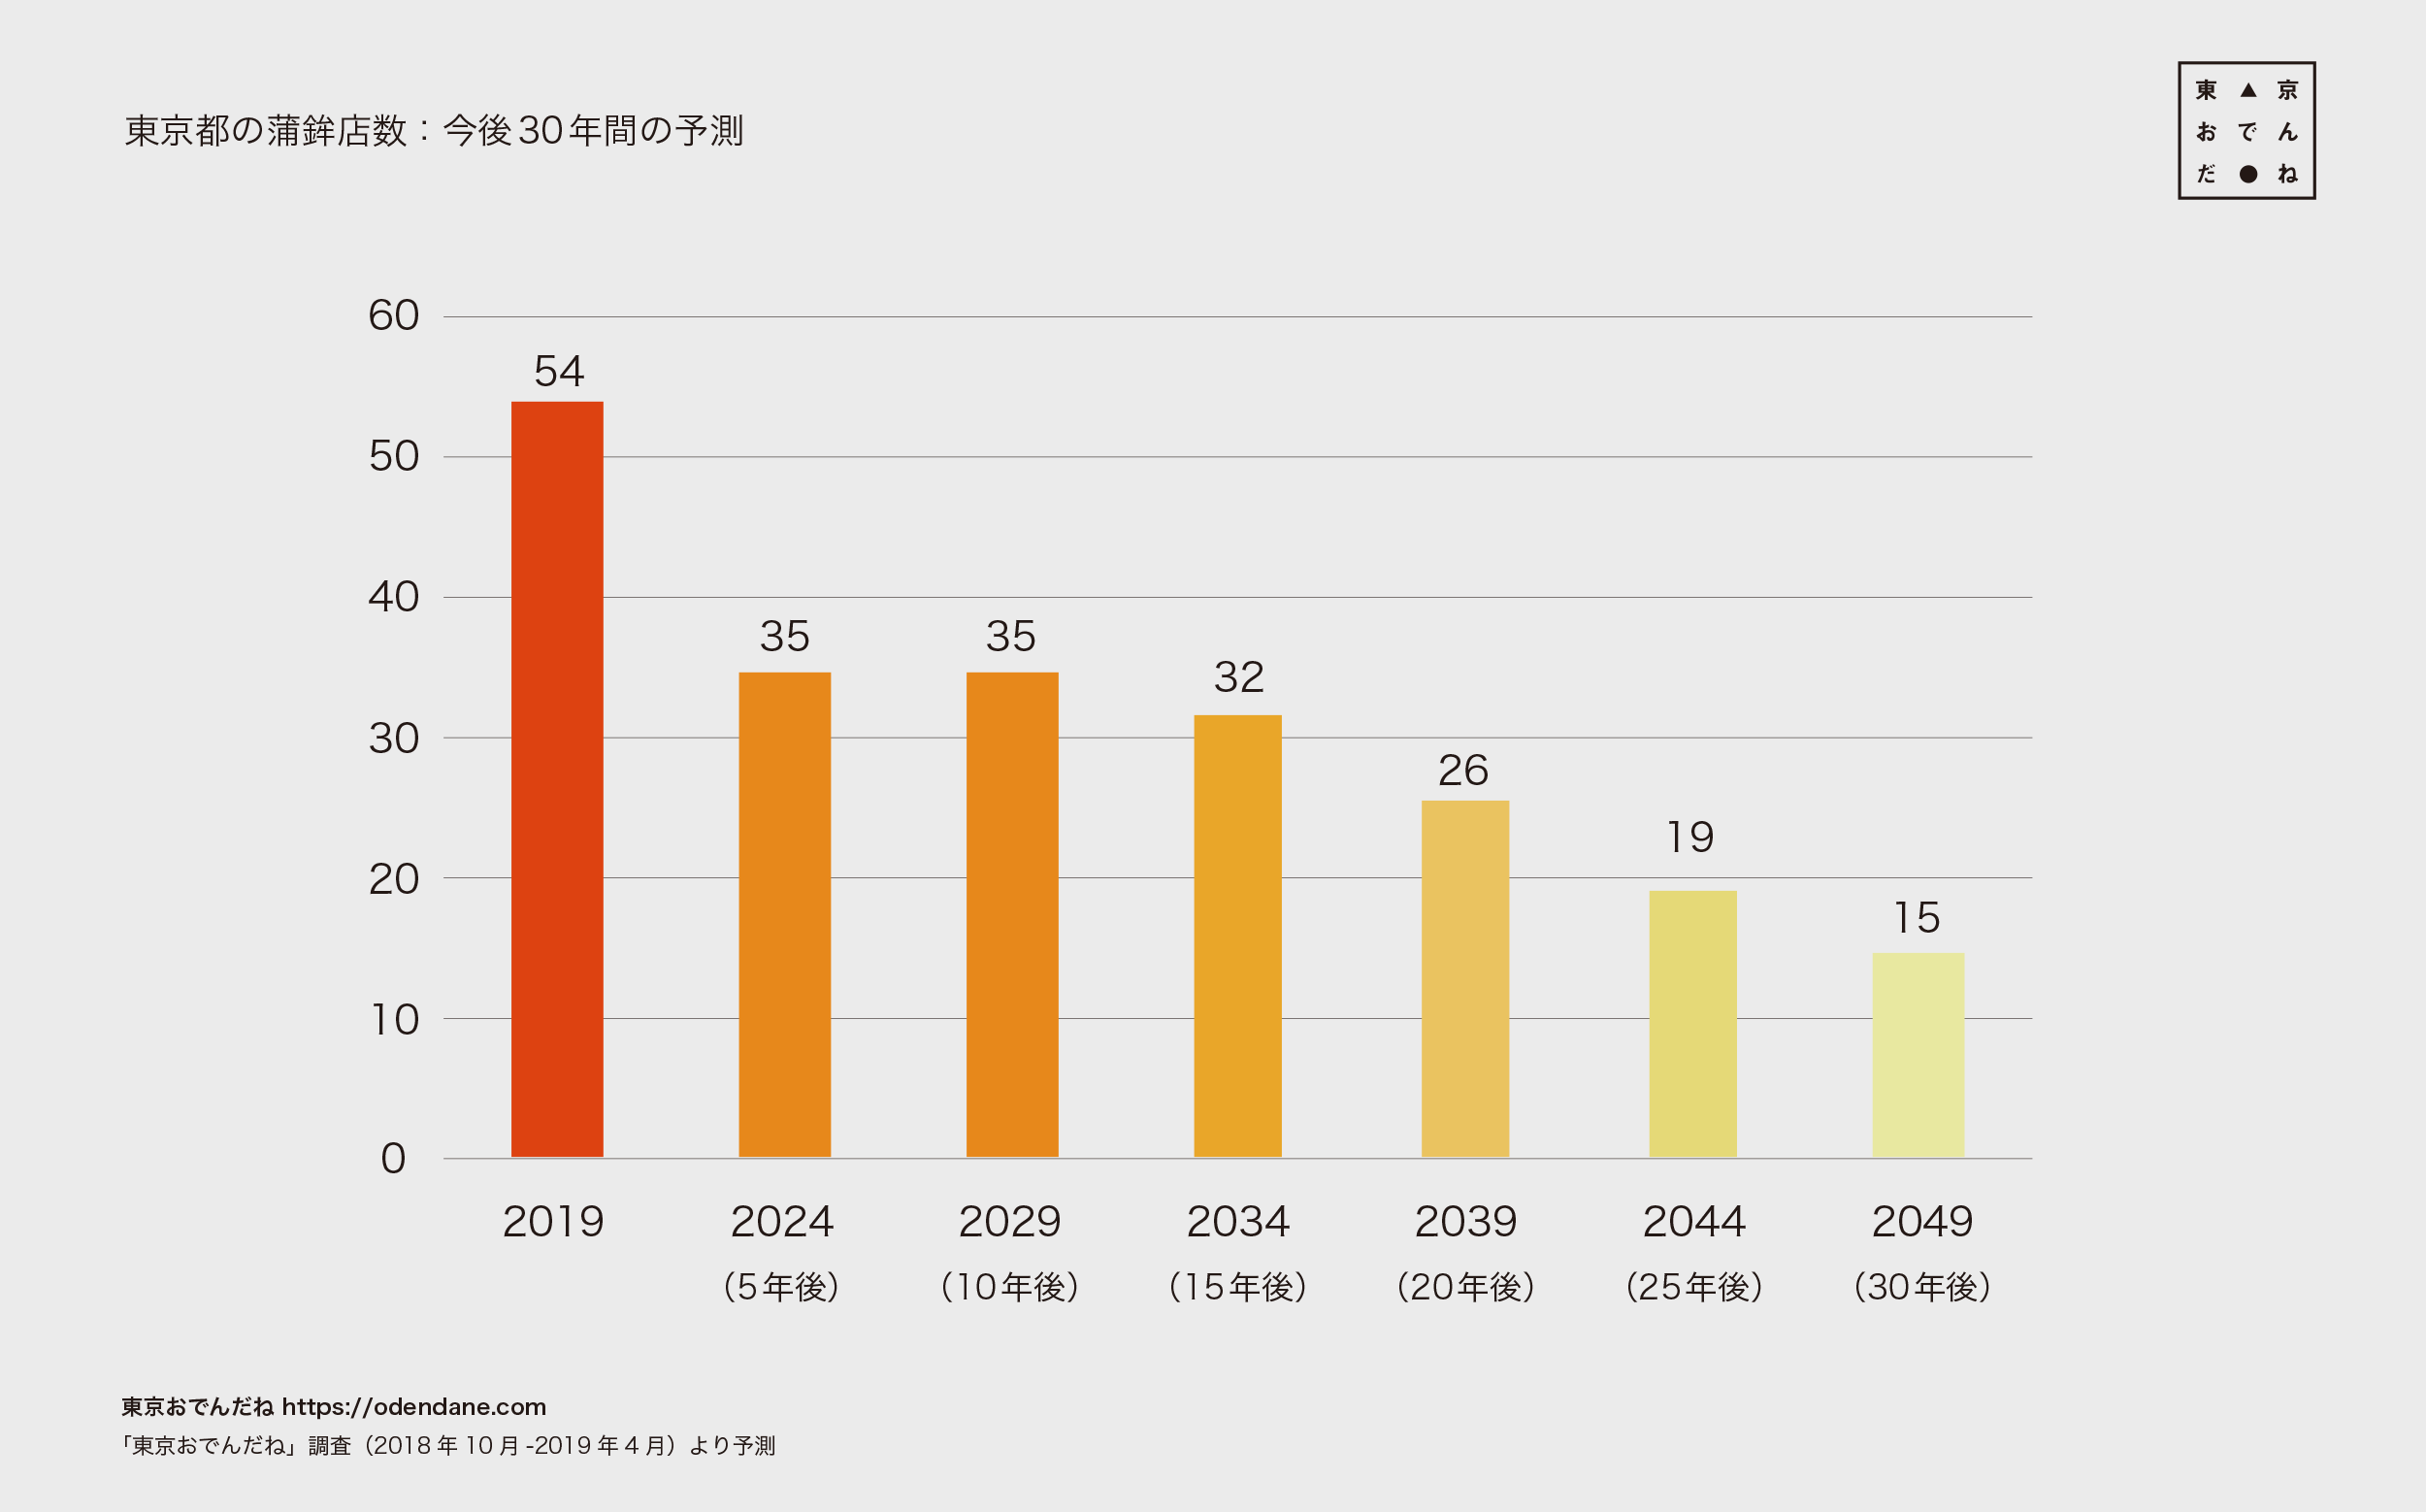 図4：東京都の蒲鉾店数：今後30年間の予測